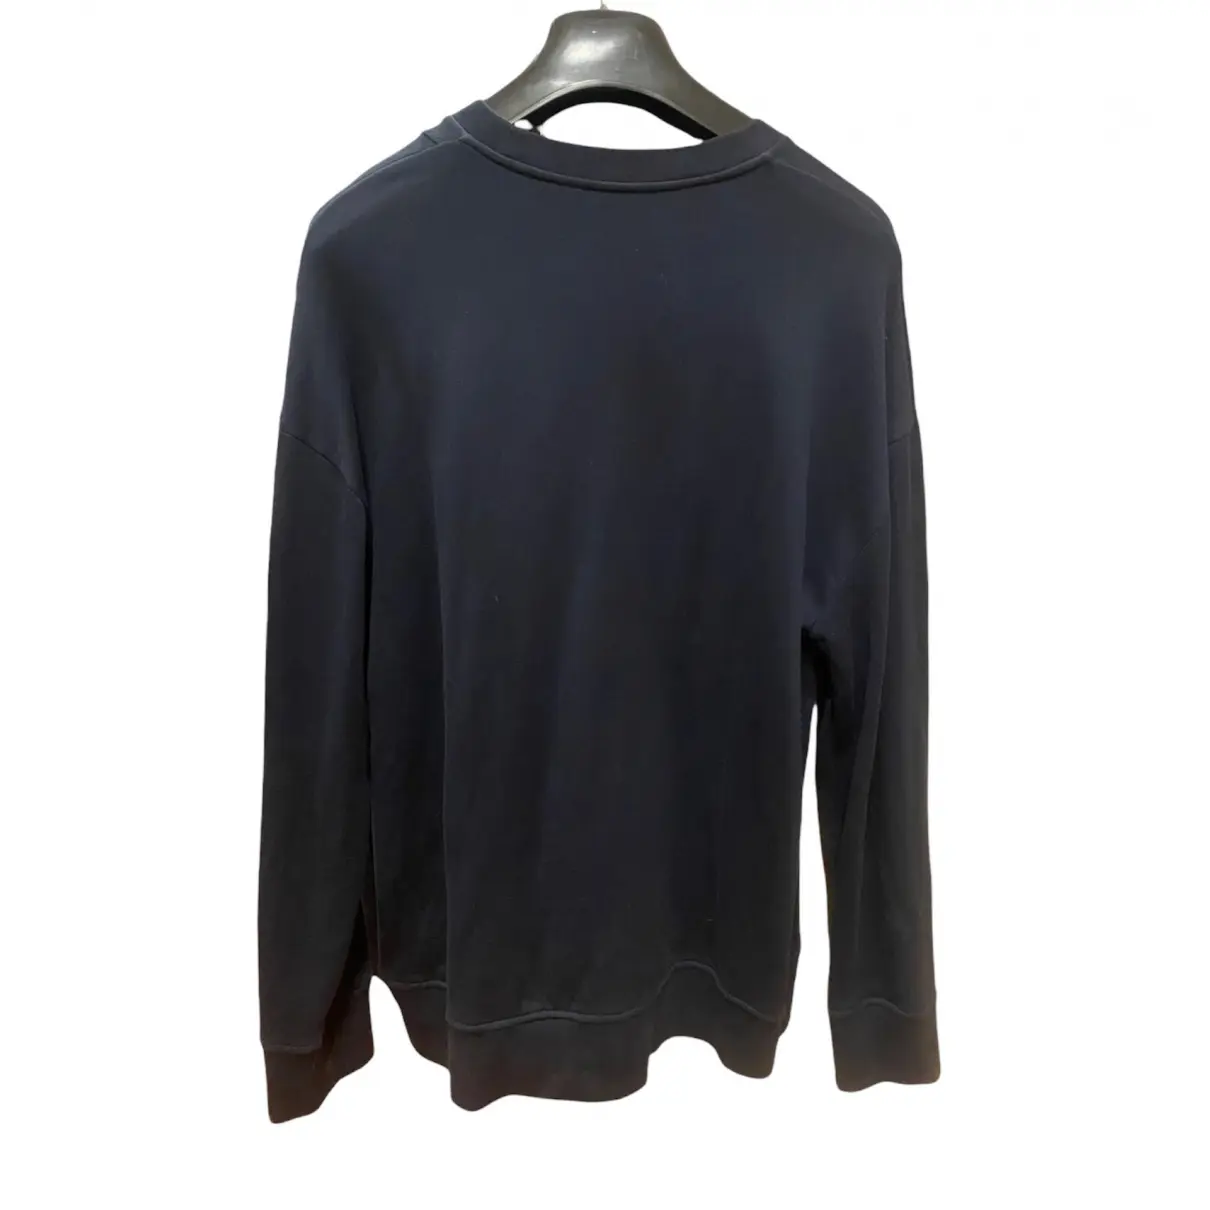 Buy N°21 Sweatshirt online